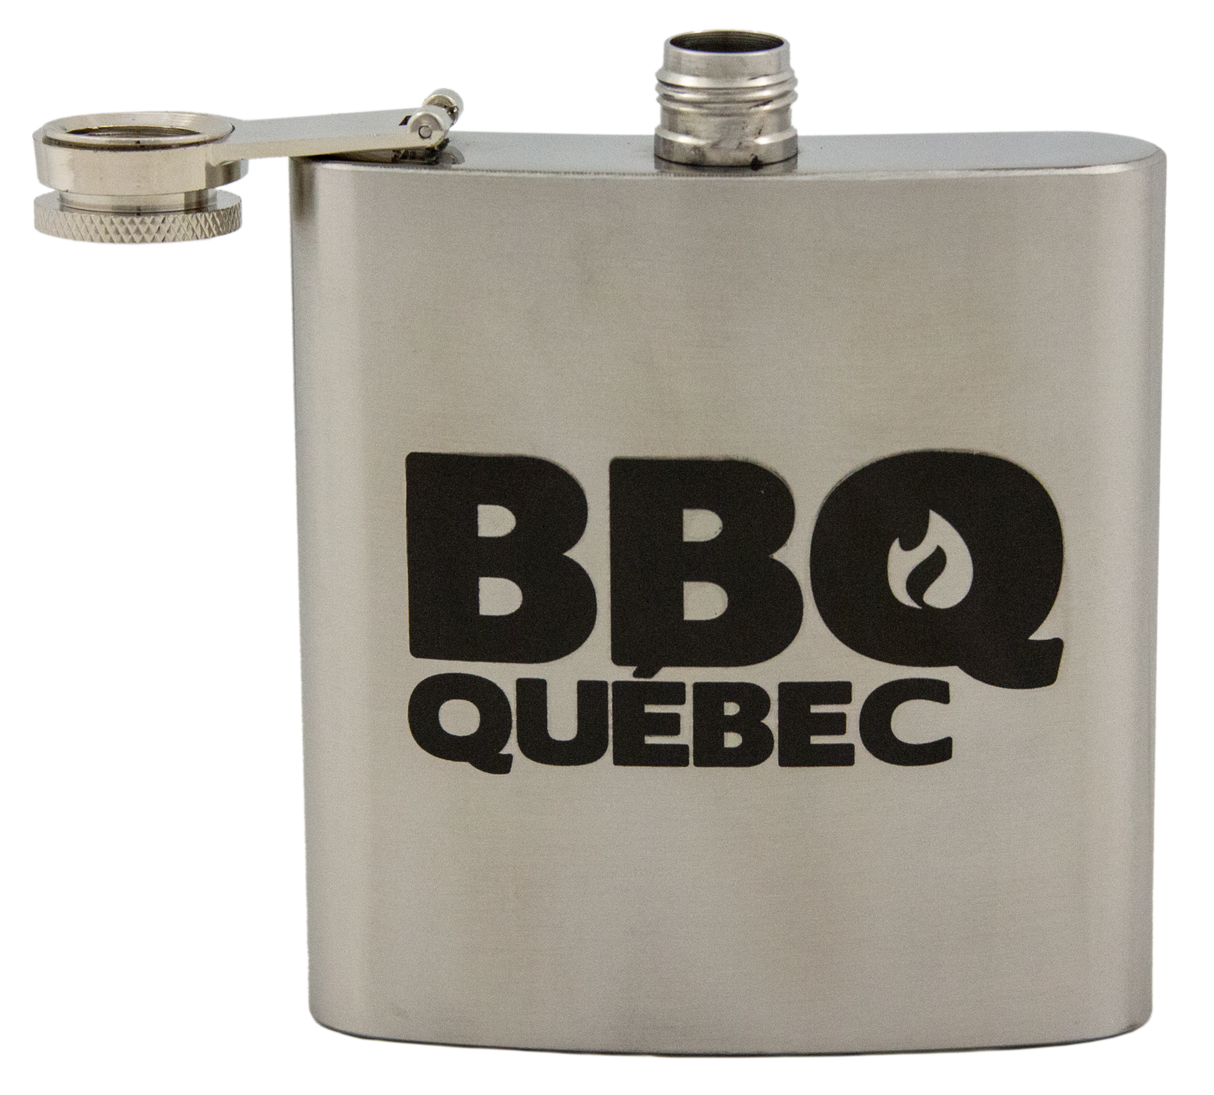 Flasque BBQ Québec par BBQ Québec vendu par BBQQUEBEC.com